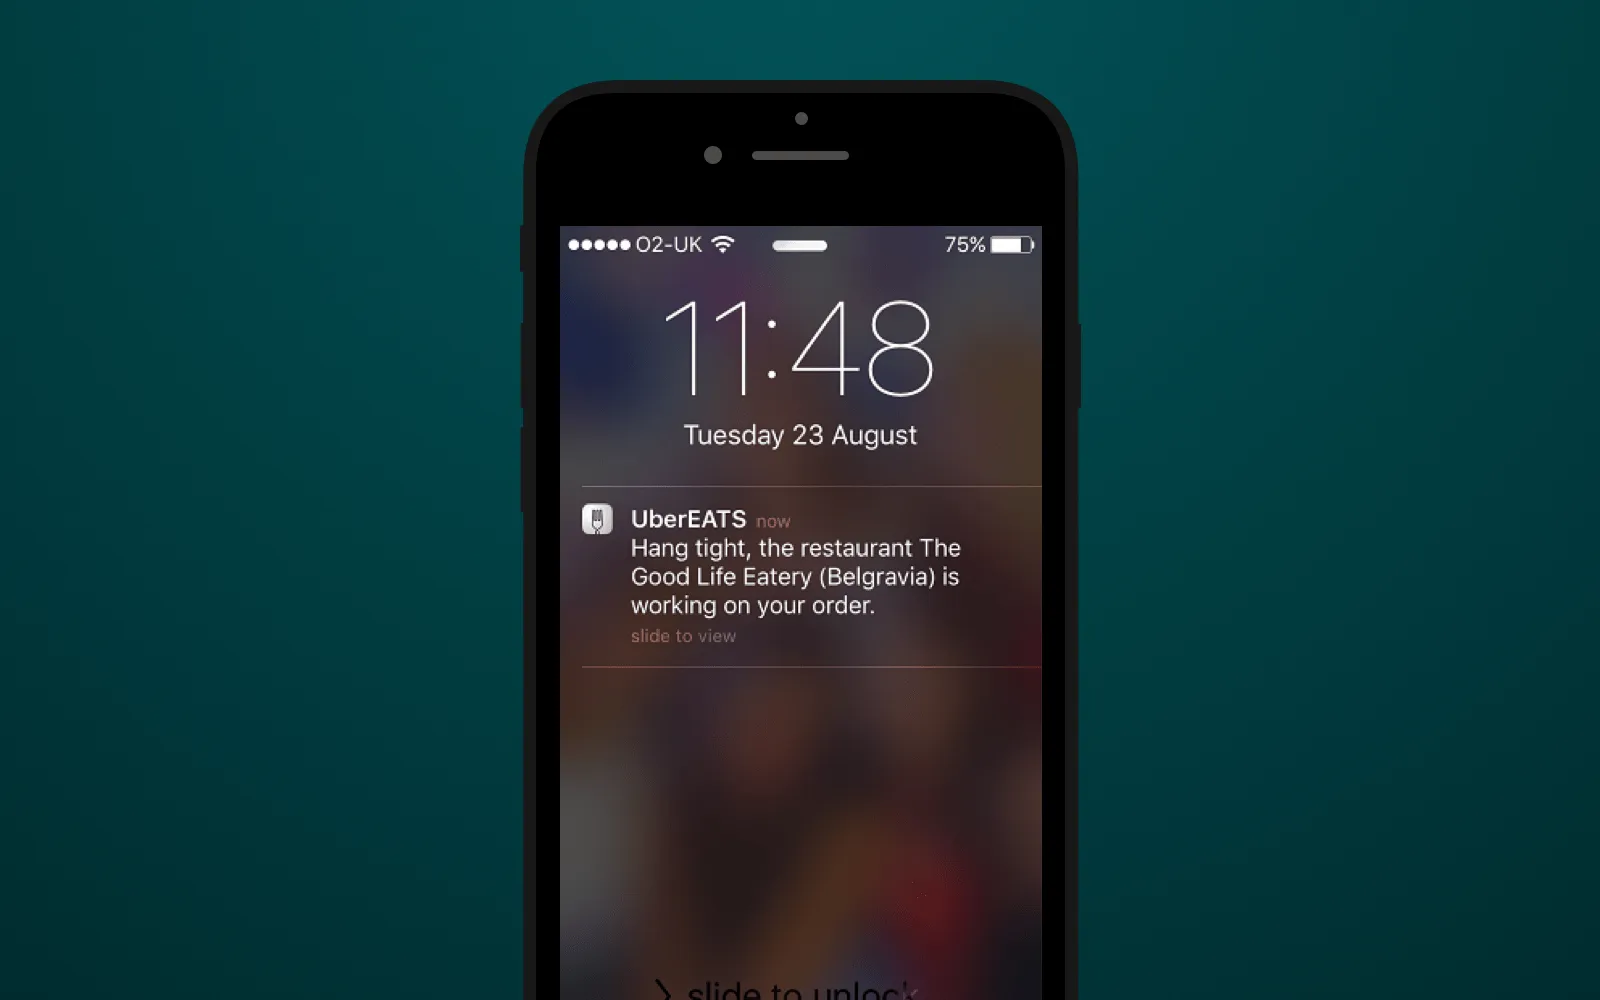 Custom push notifications sent via UberEats app